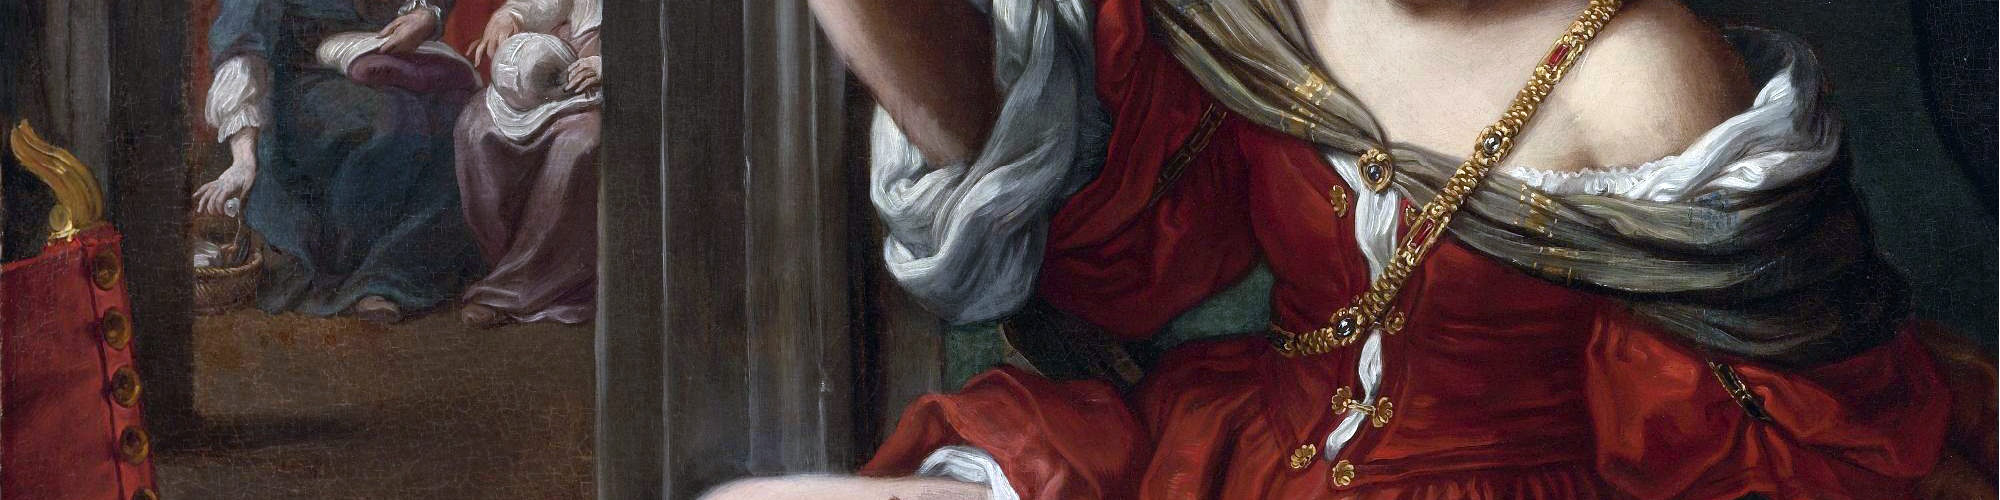 Elisabetta Sirani, Portia Wounding her Thigh, 1664. Oil on canvas, 101 cm x 138 cm. Collezioni d'Arte e di Storia della Fondazione della Cassa di Risparmio, Bologna.